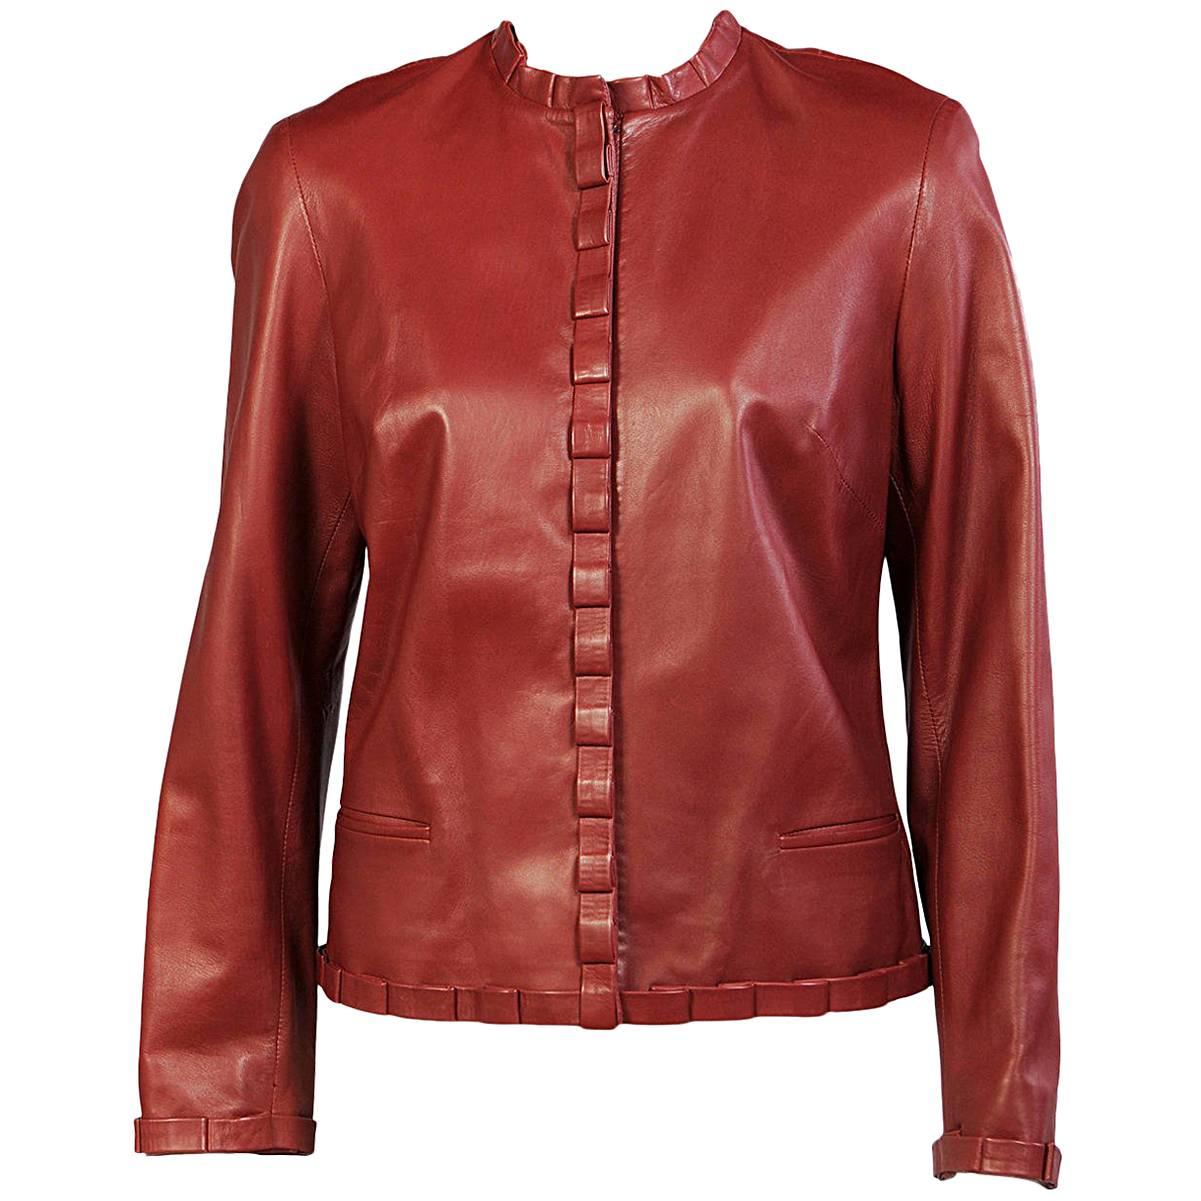 Carolina Herrera Burgundy Leather Jacket 